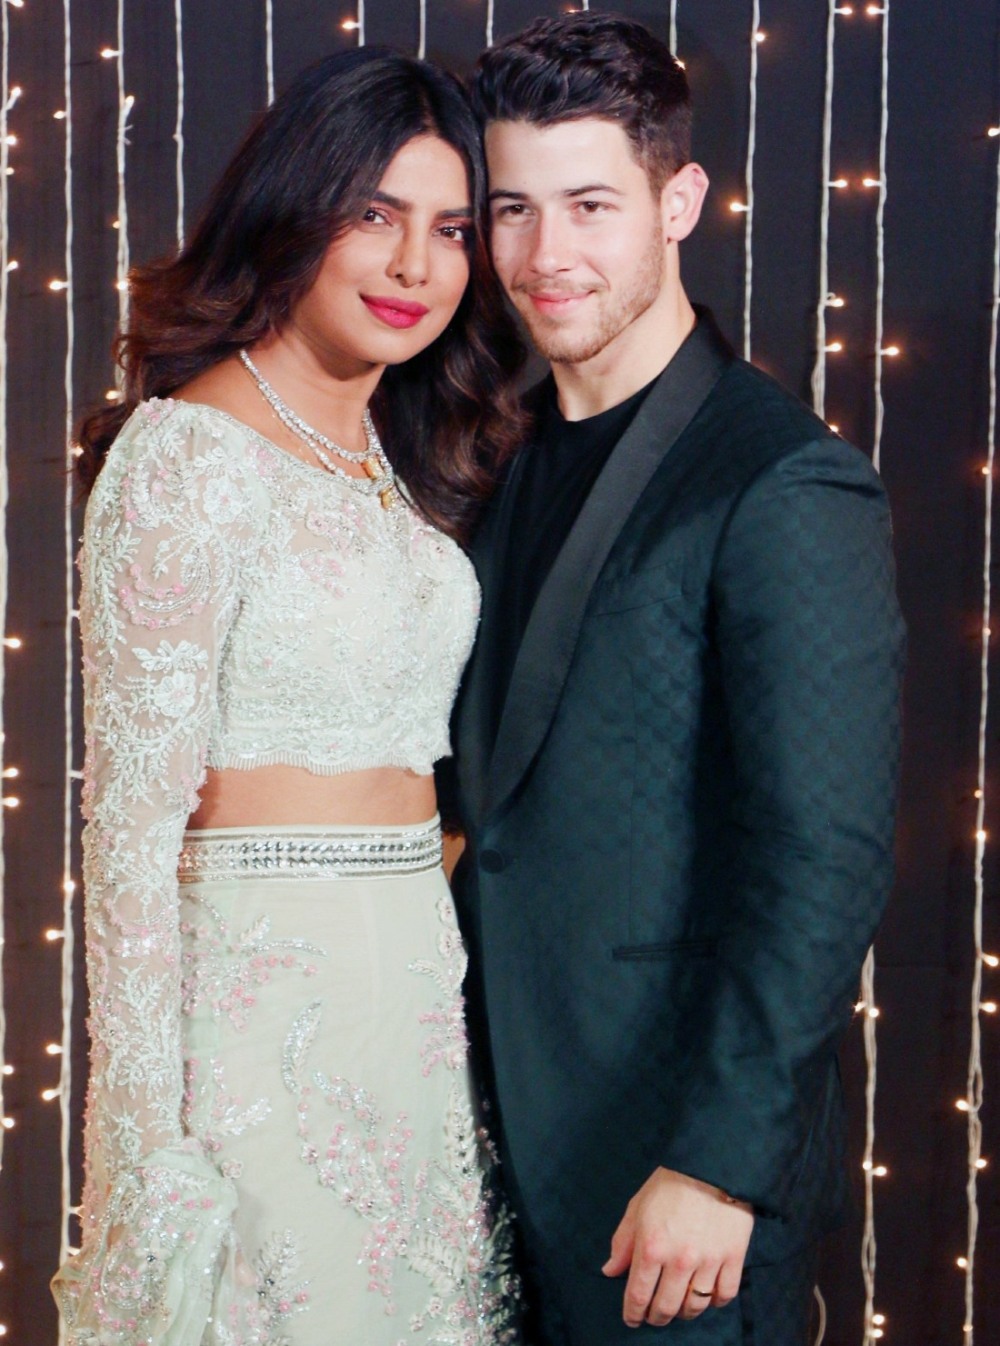 Priyanka Chopra and Nick Jonas continue their glamorous wedding celebrations in Mumbai